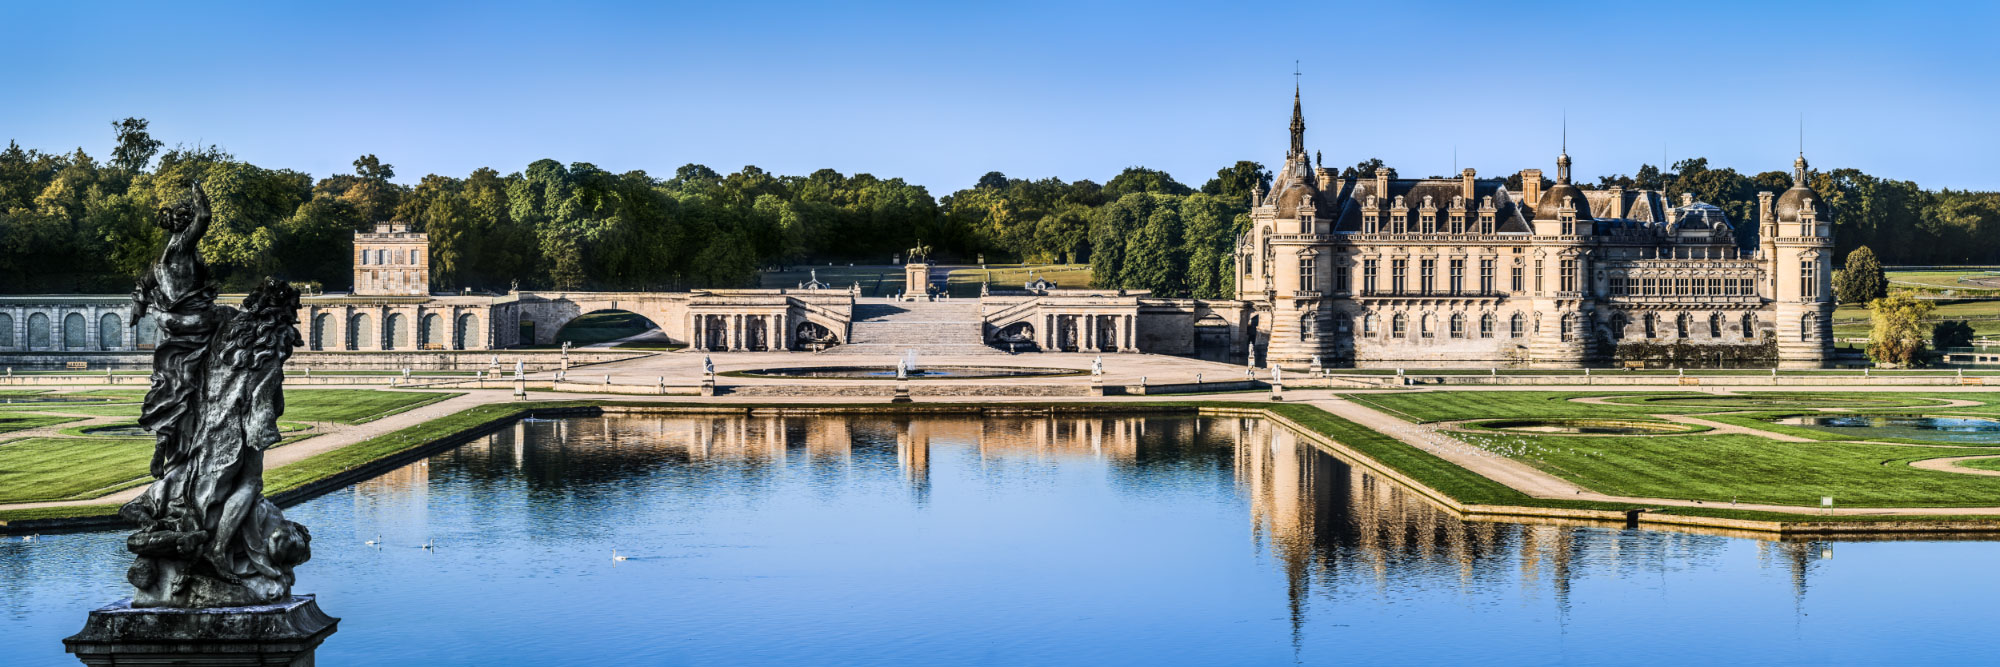 Le château de Chantilly, près d'un affluent de l'Oise